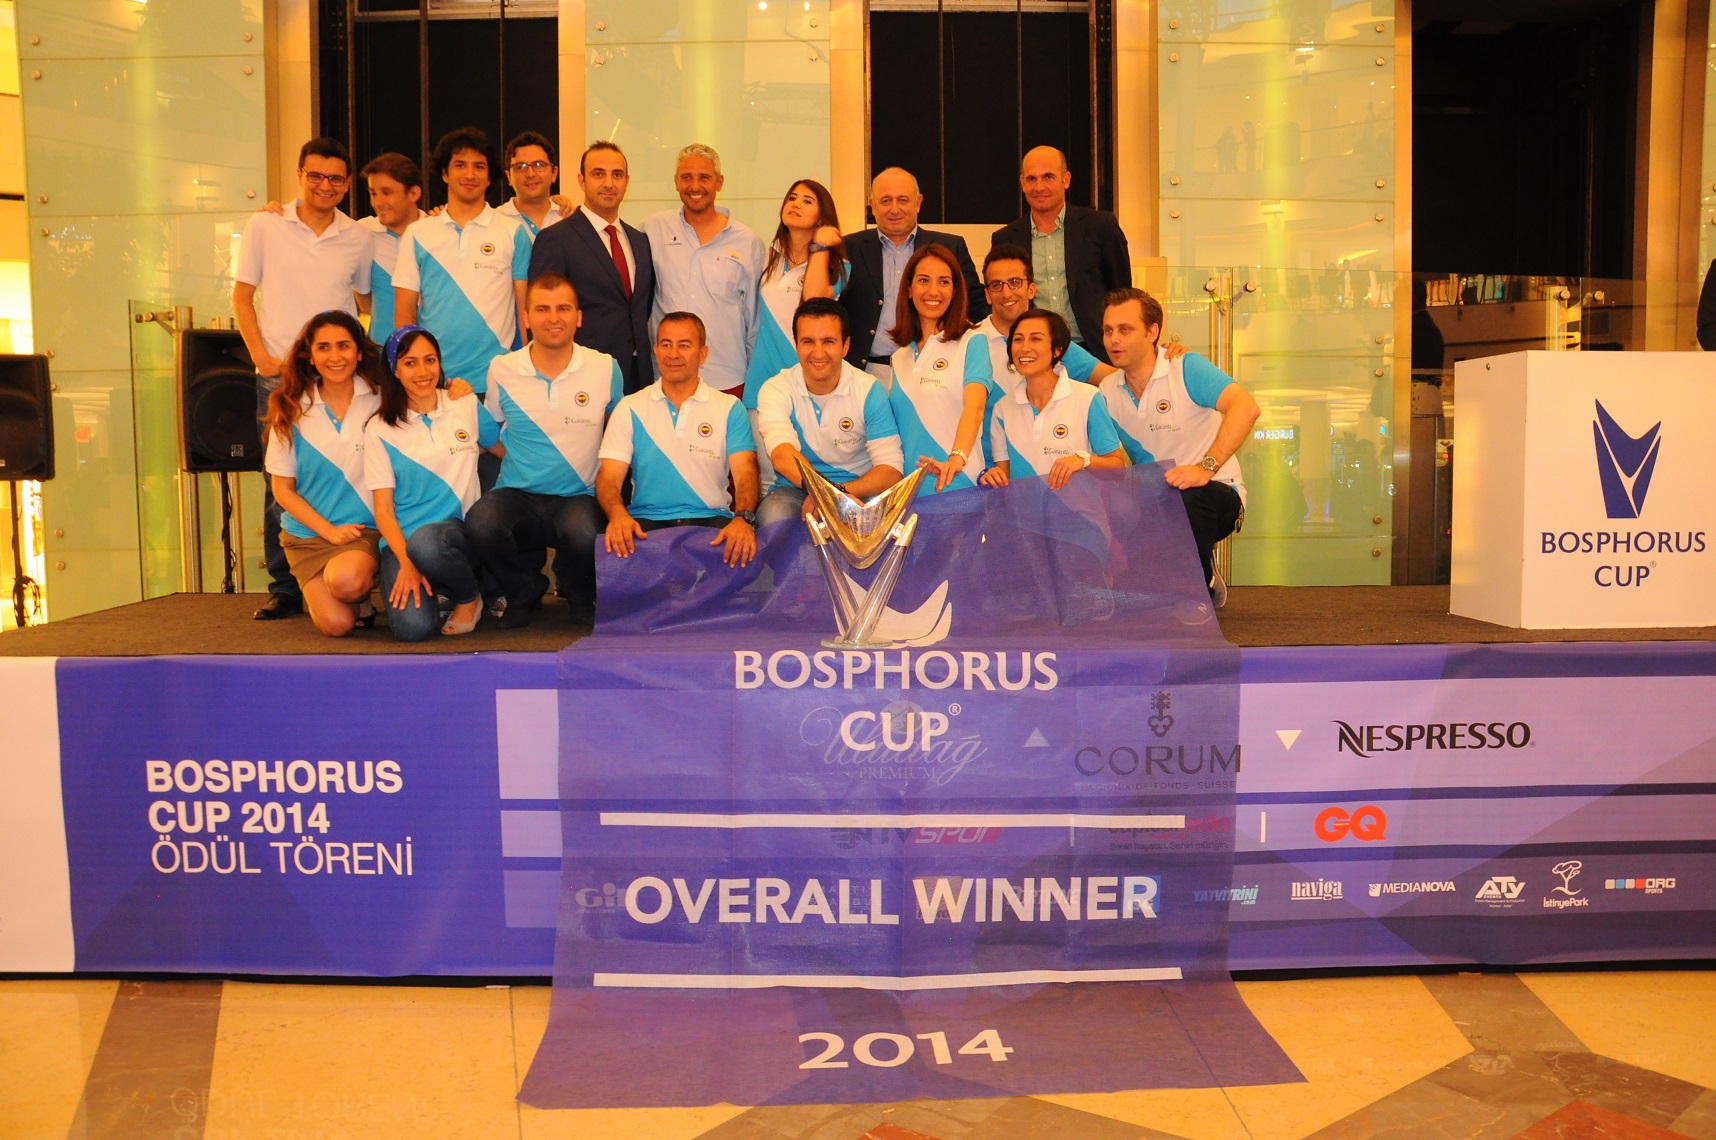 Bosphorus Cup ödül töreni İstinye Park'ta gerçekleşti.